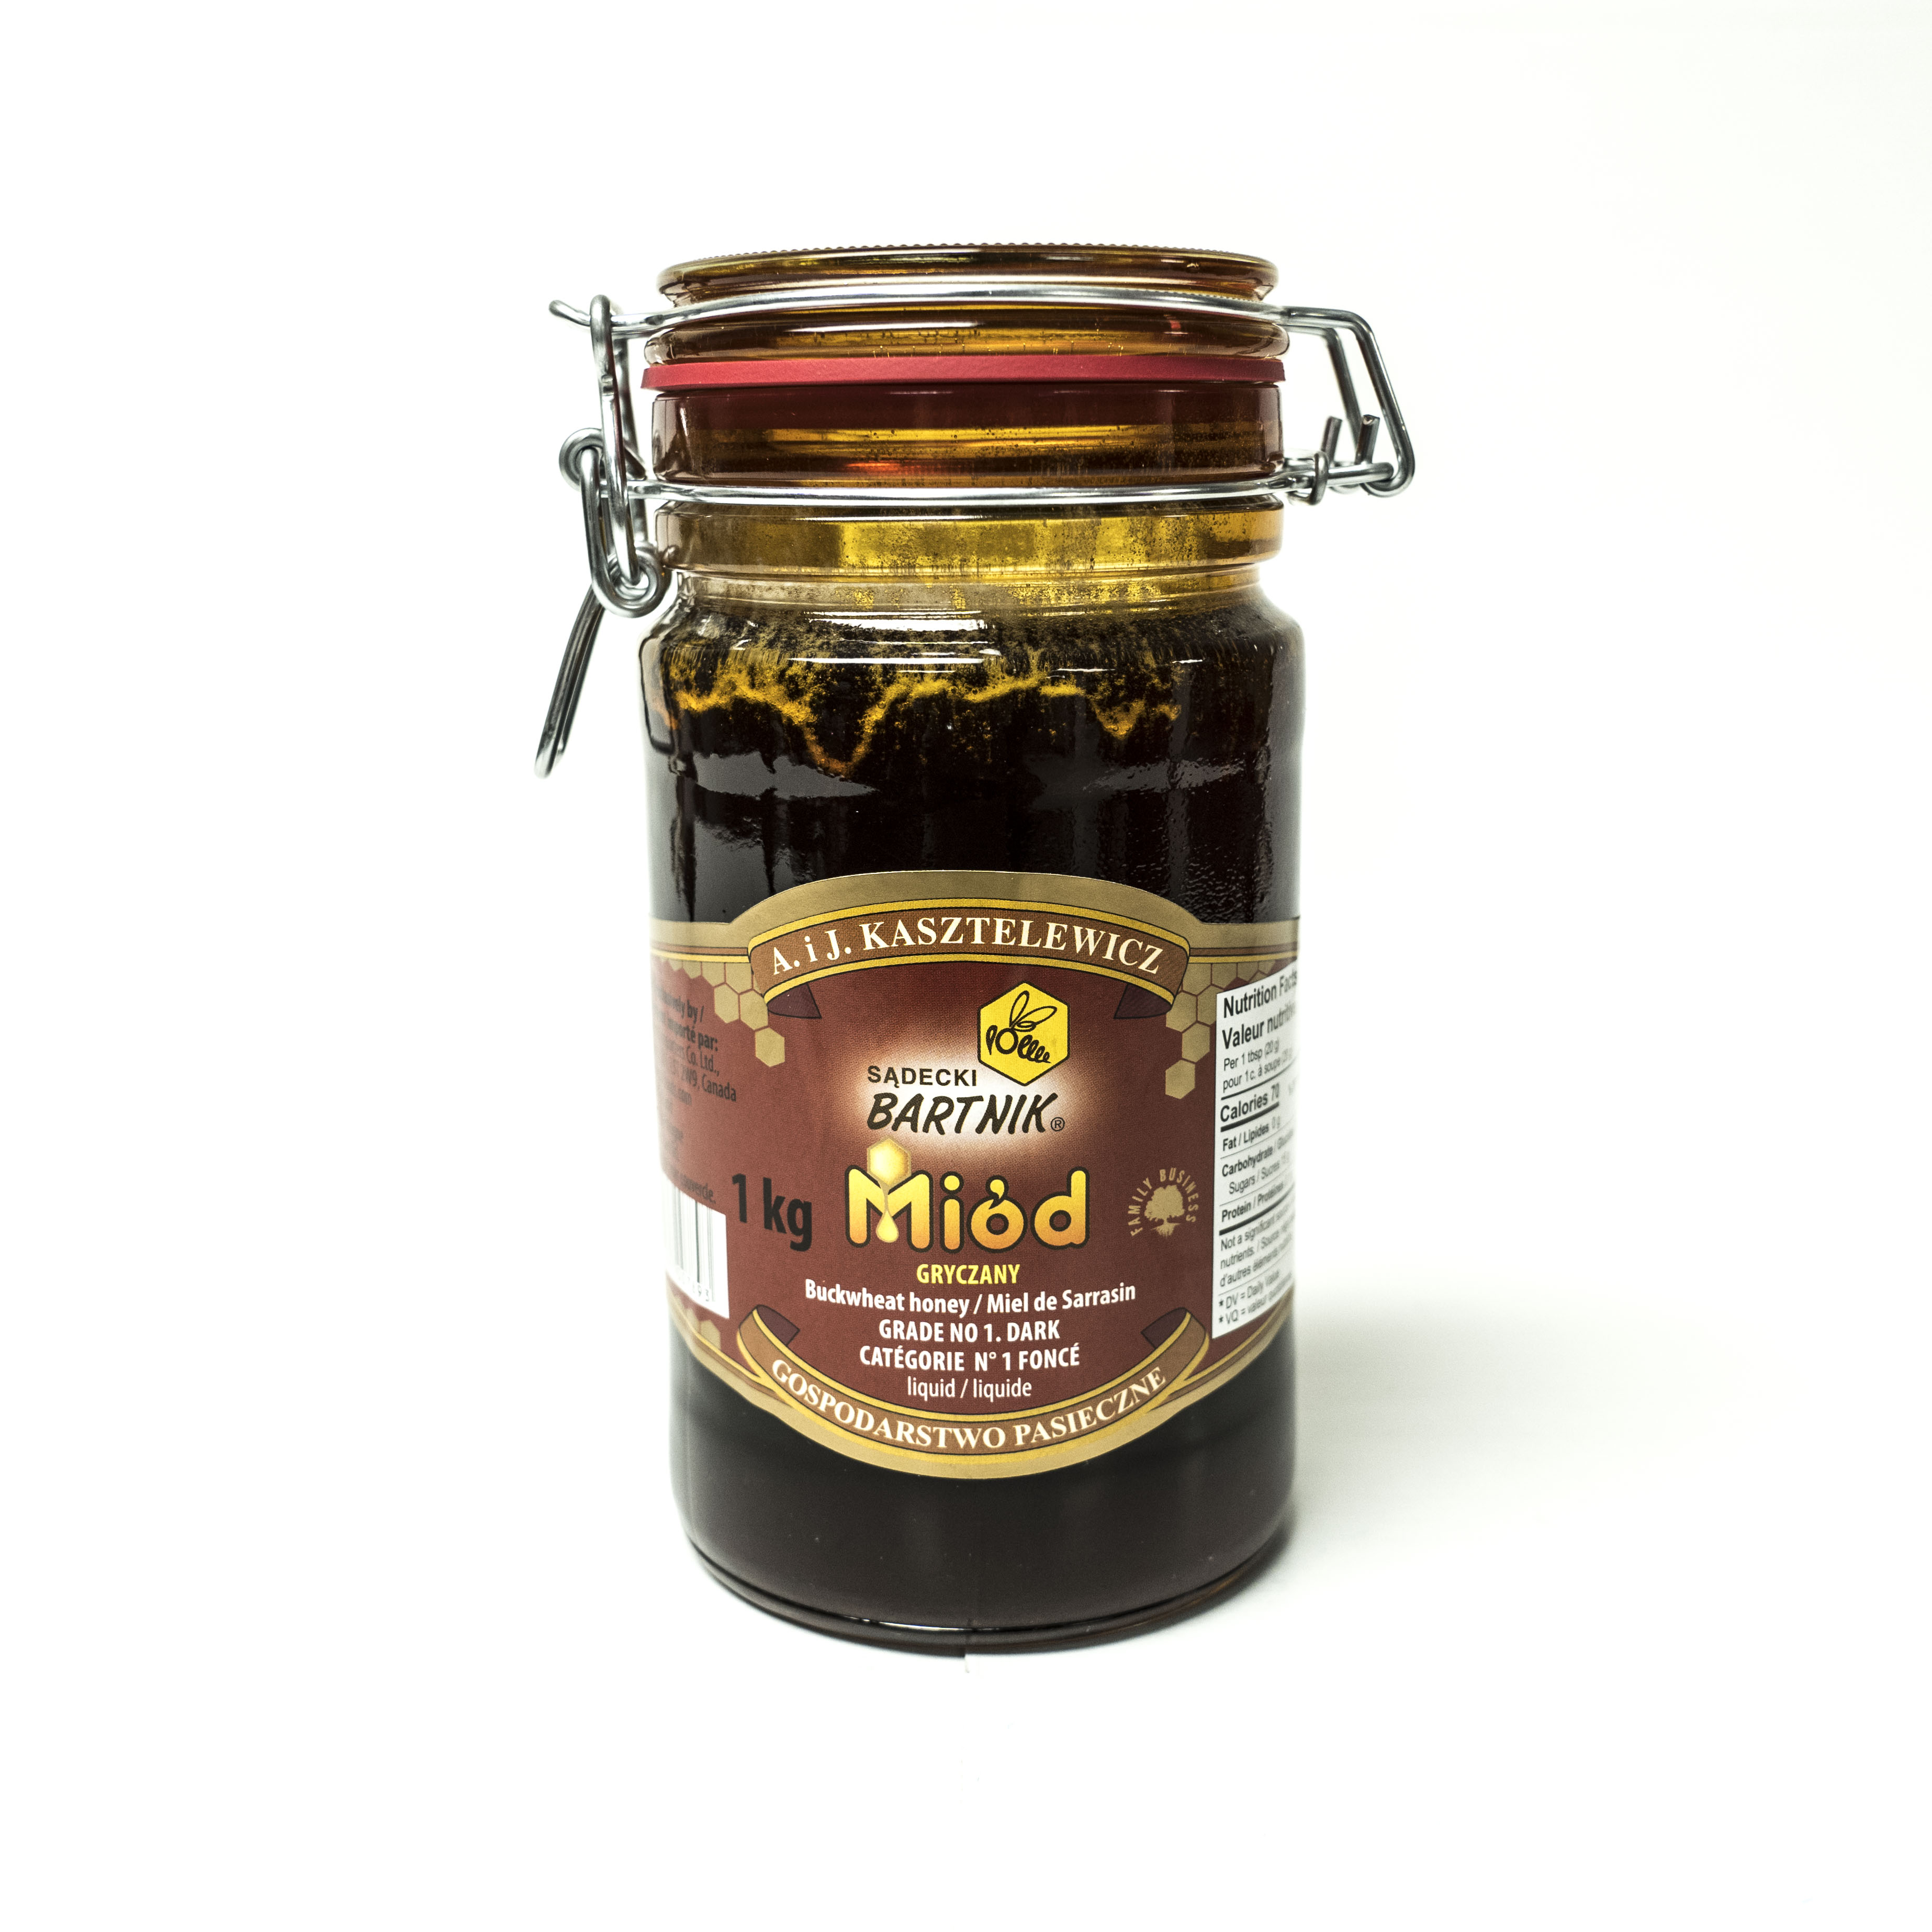 Miod Buckwheat Honey